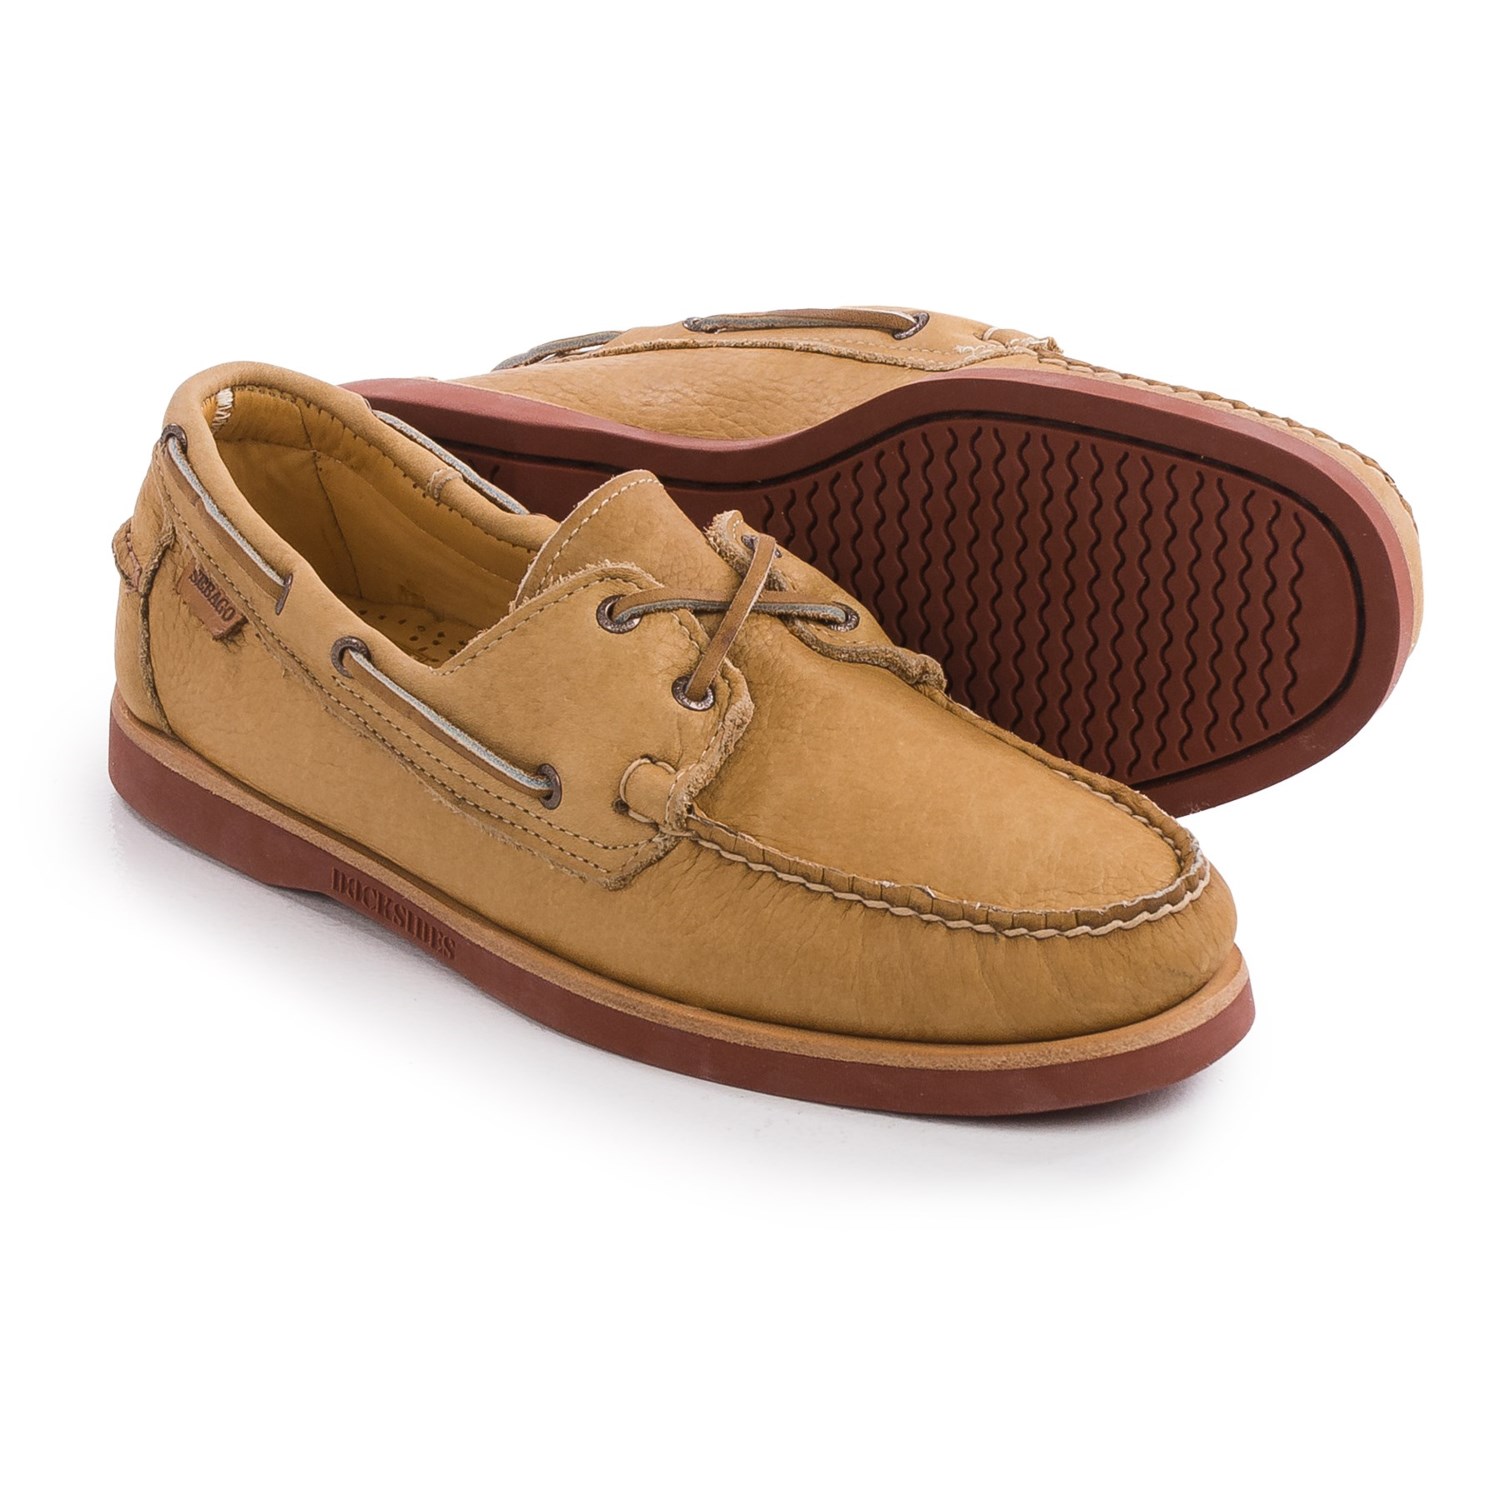 Sebago Crest Docksides® Boat Shoes (For Men) - Save 45%